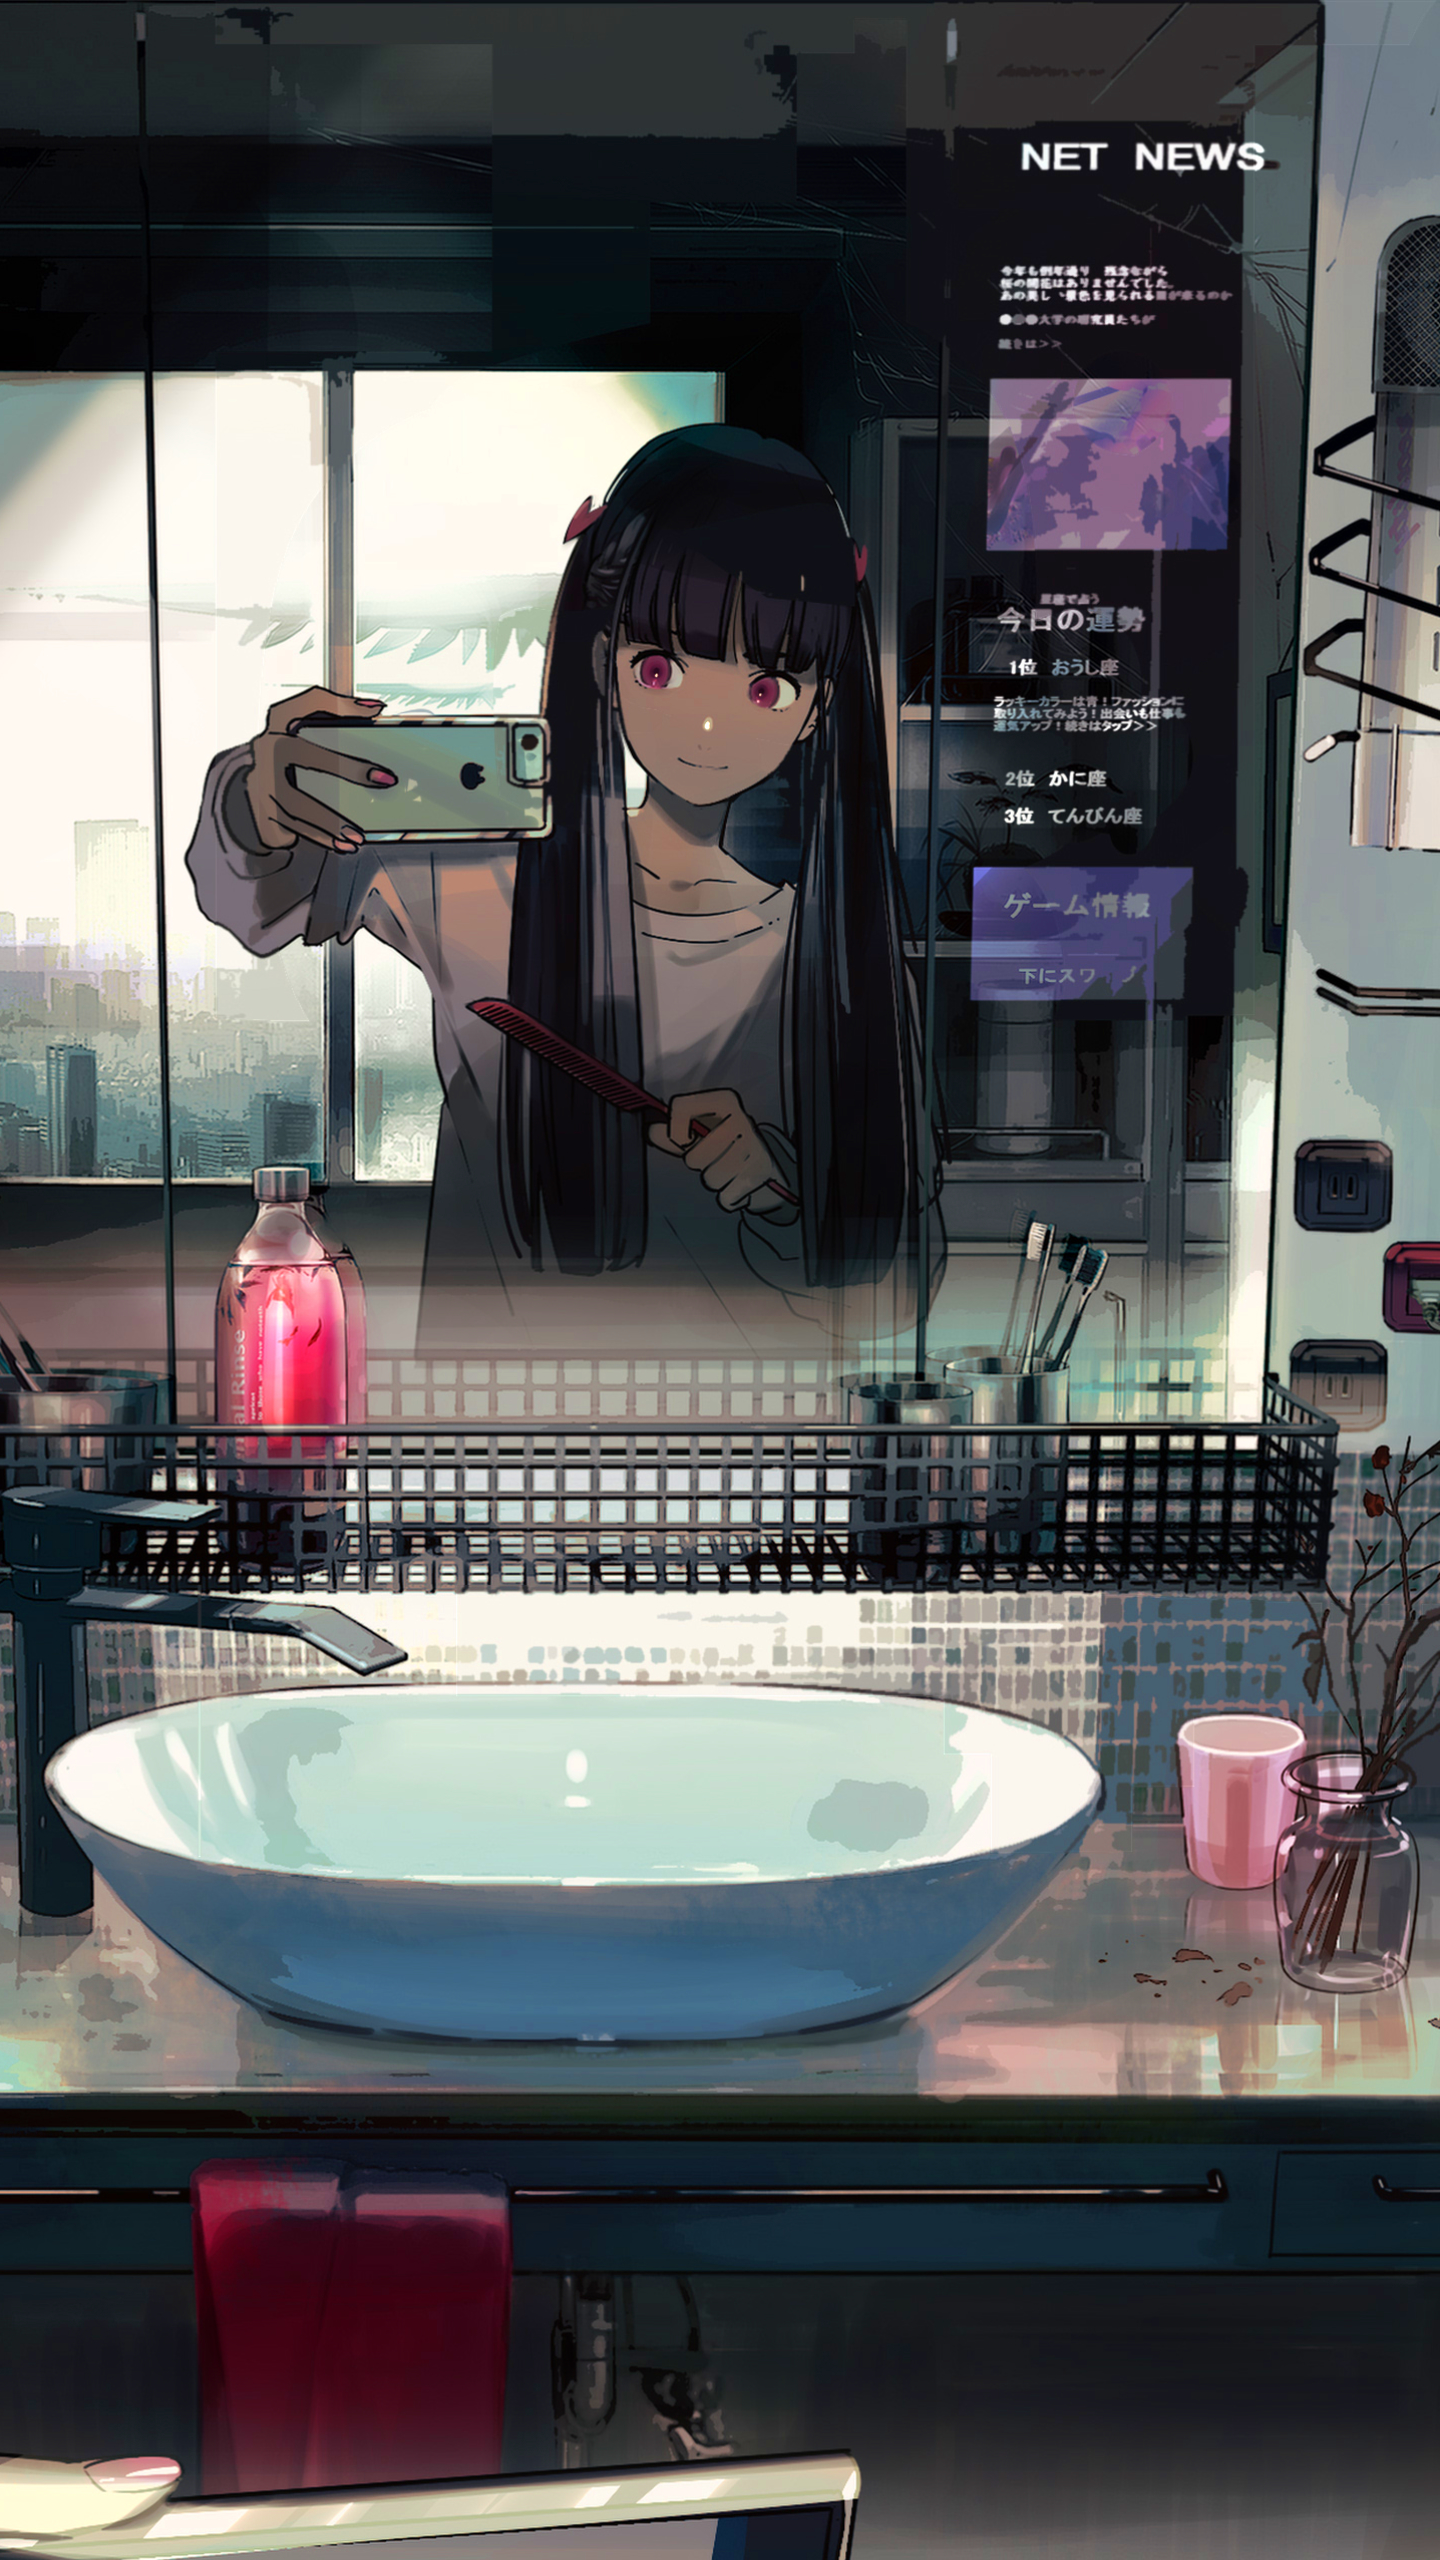 anime, room, twintails, selfie, long hair, black hair, bathroom, smartphone